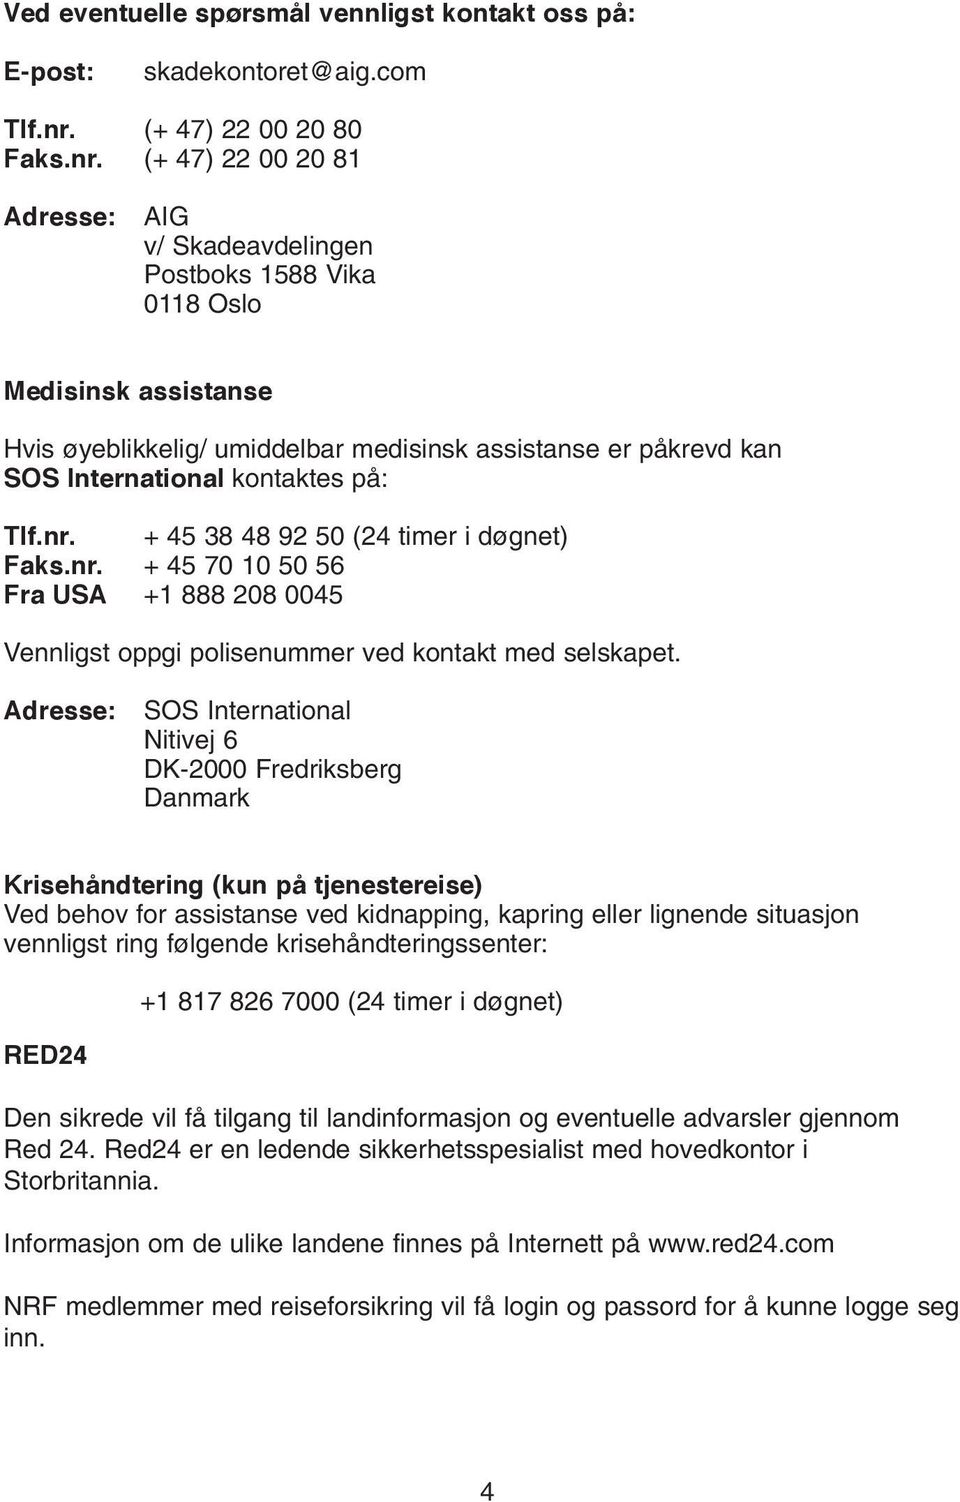 (+ 47) 22 00 20 81 Adresse: AIG v/ Skadeavdelingen Postboks 1588 Vika 0118 Oslo Medisinsk assistanse Hvis øyeblikkelig/ umiddelbar medisinsk assistanse er påkrevd kan SOS International kontaktes på: